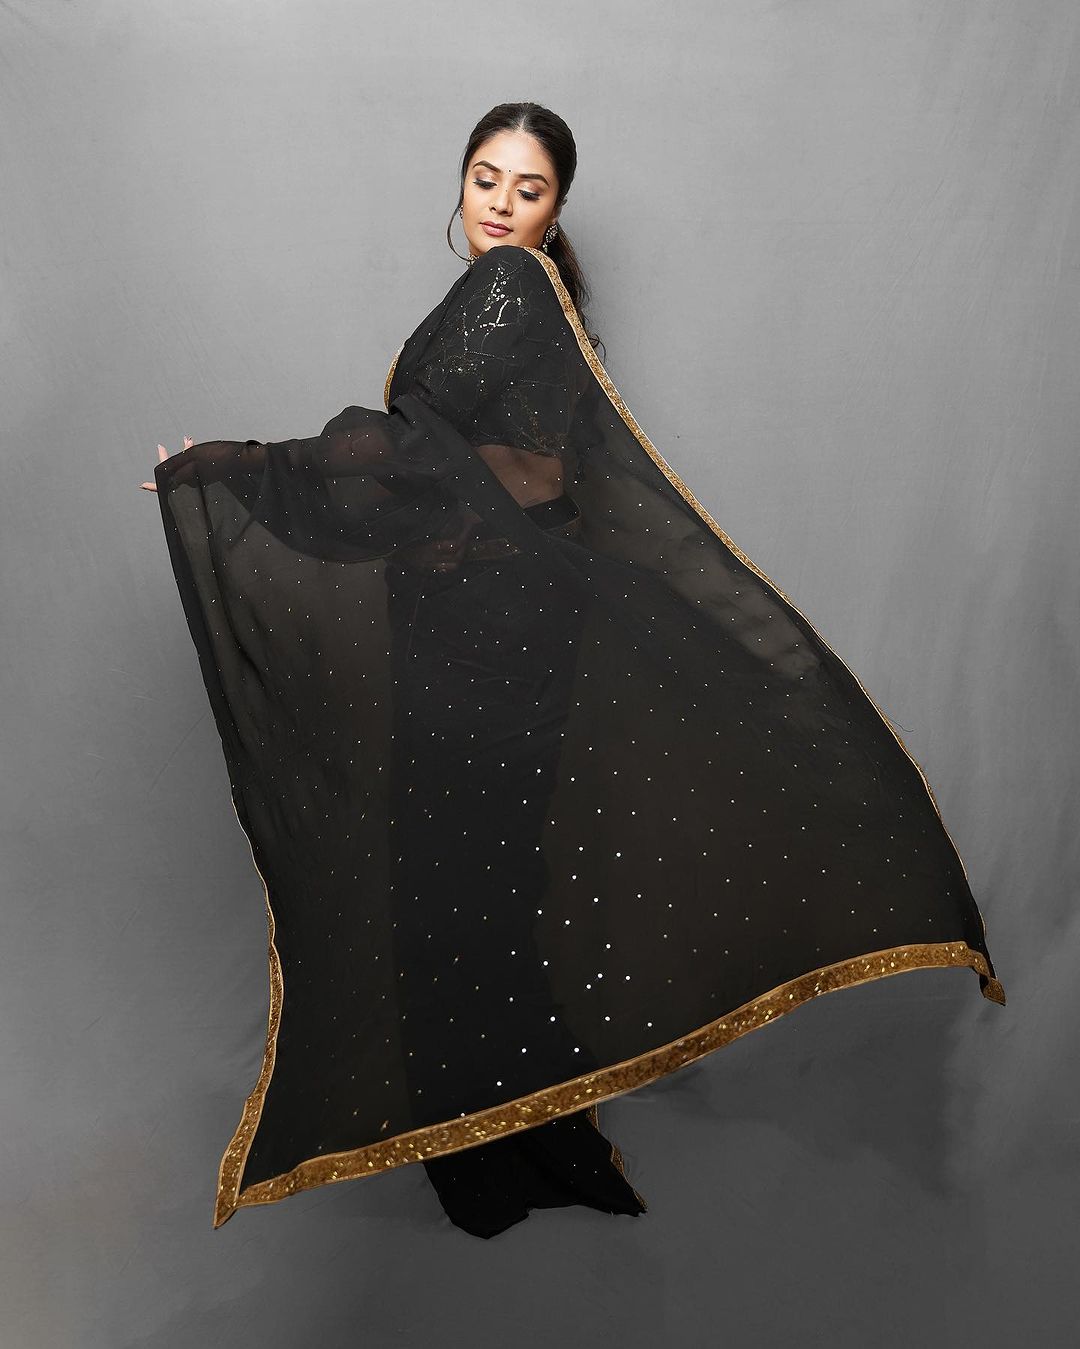 sreemukhi-gorgeous-looks-in-amazing-black-saree